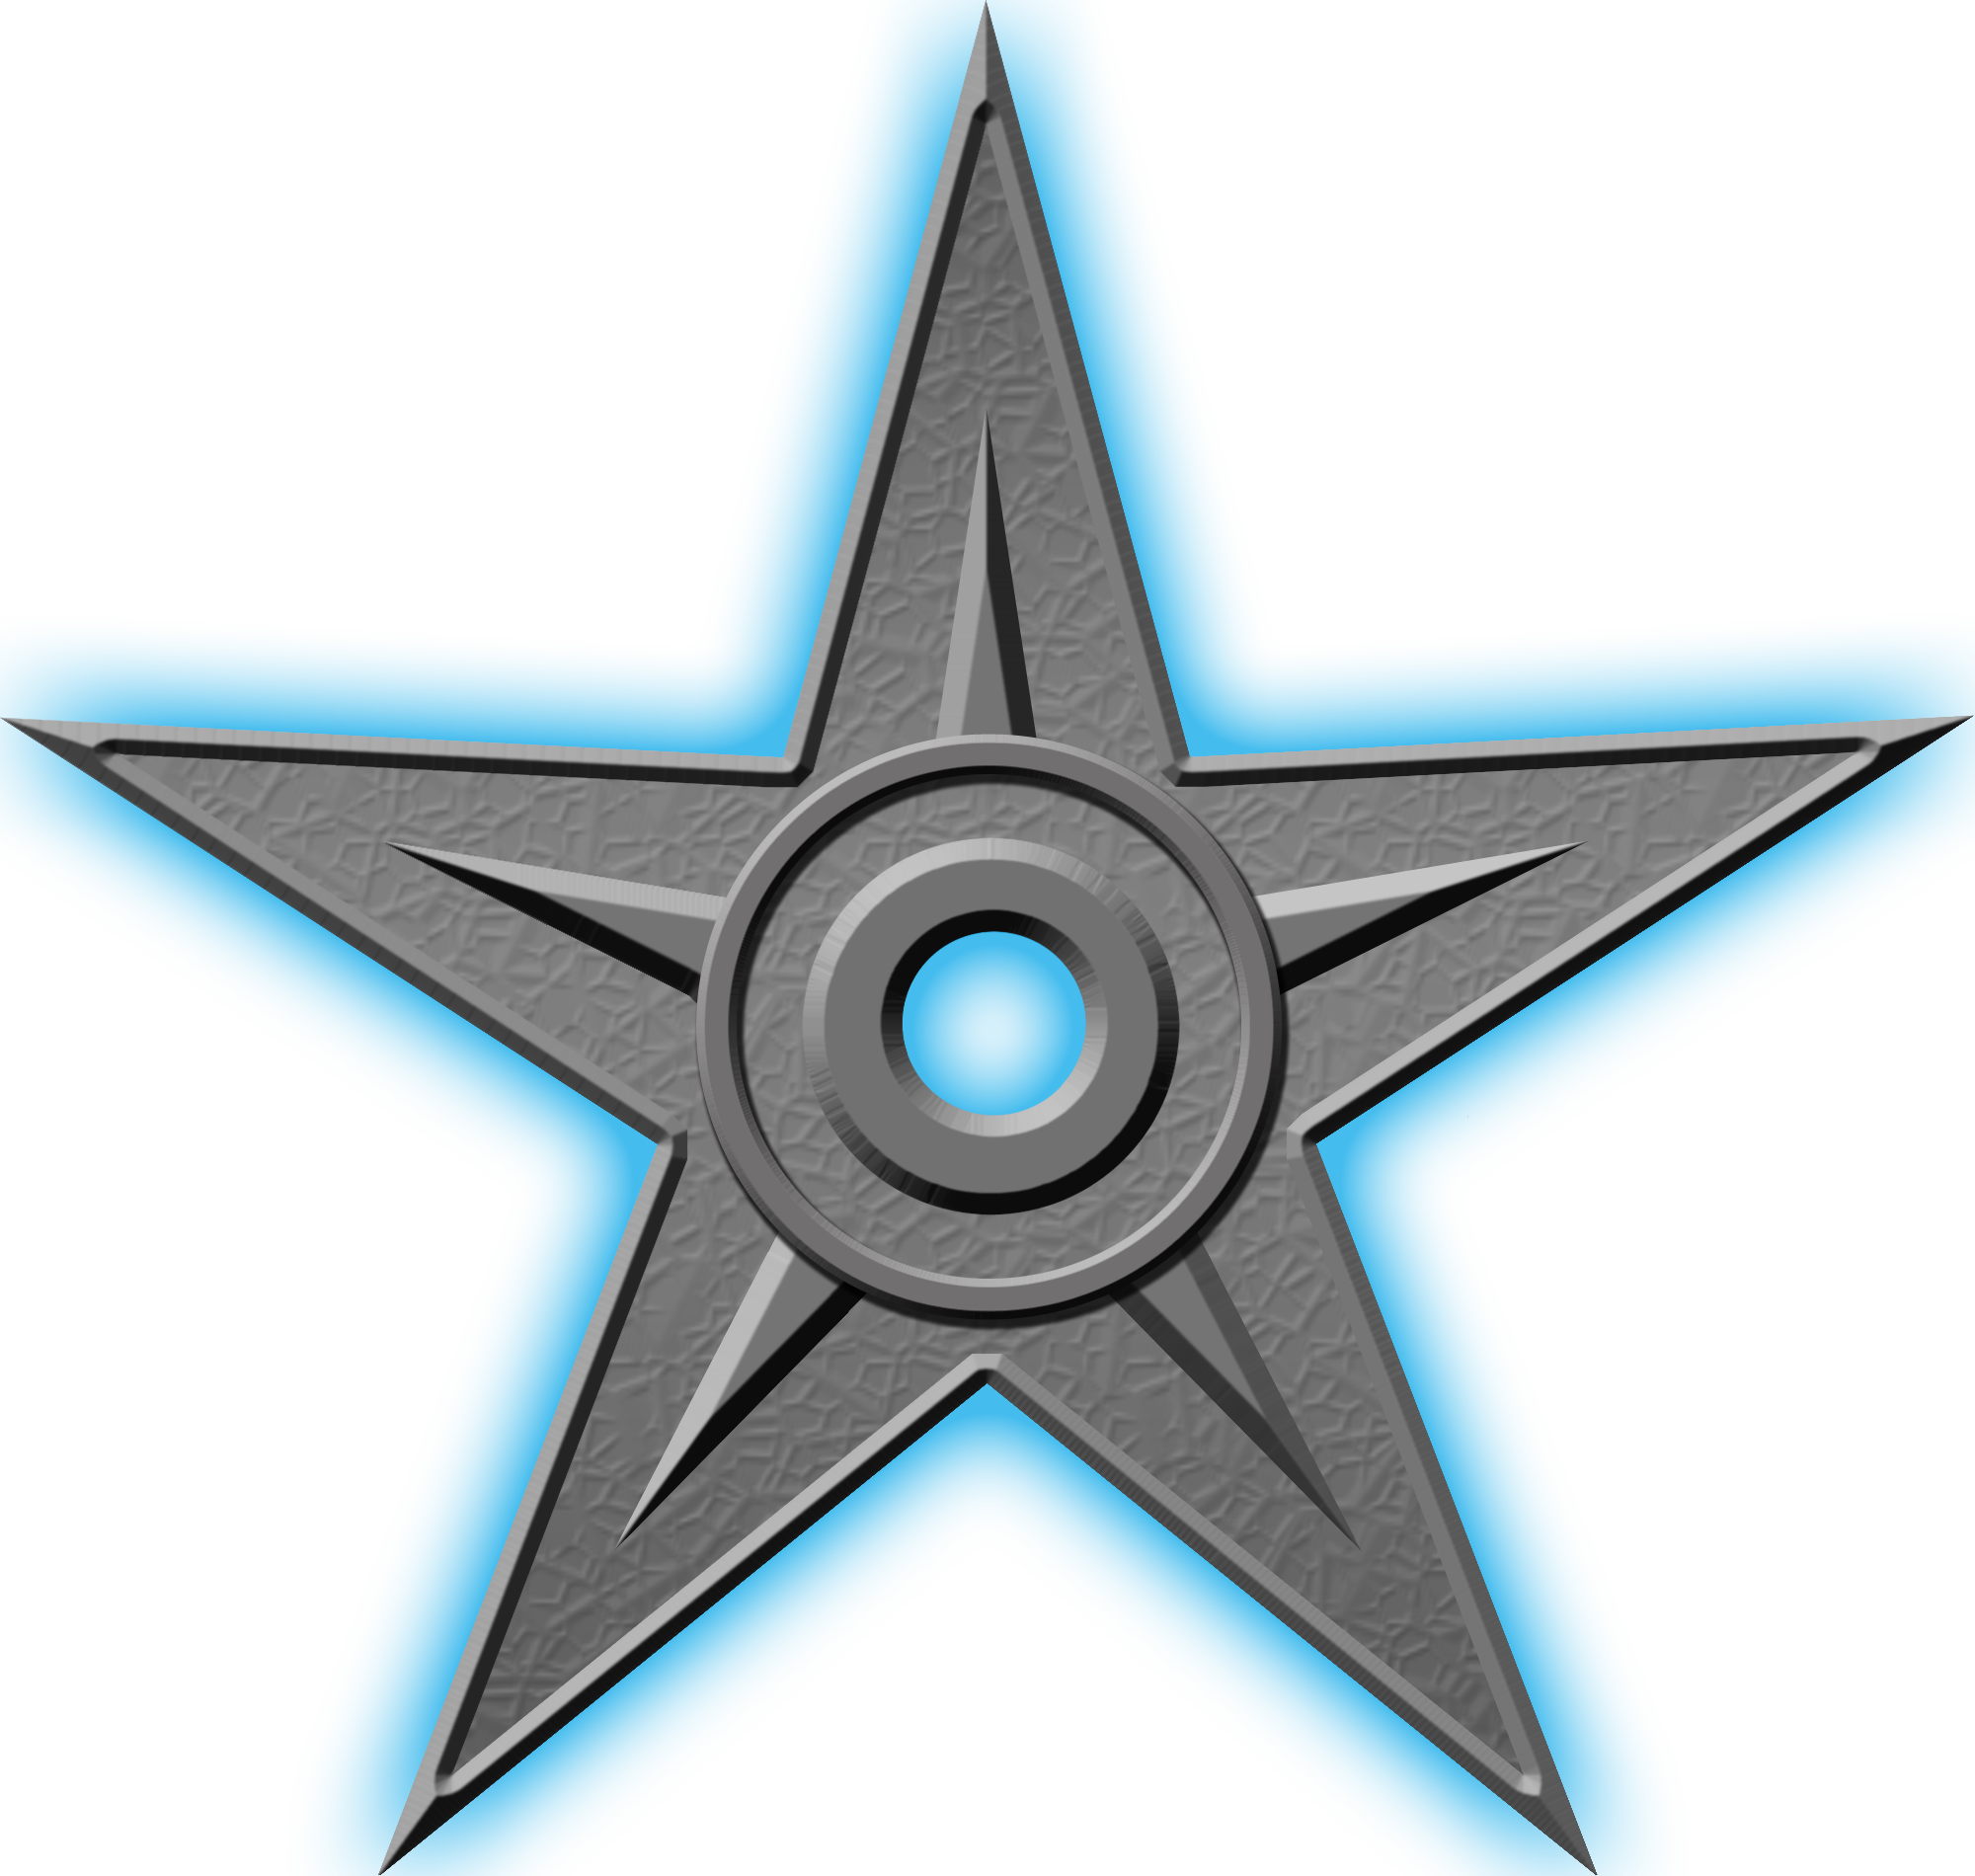 Орден #2 «За выдающиеся заслуги», присвоен 1 июня 2008 участником Кондратьев за «уважаемому и мудрому арбитру эффективного АК-5»